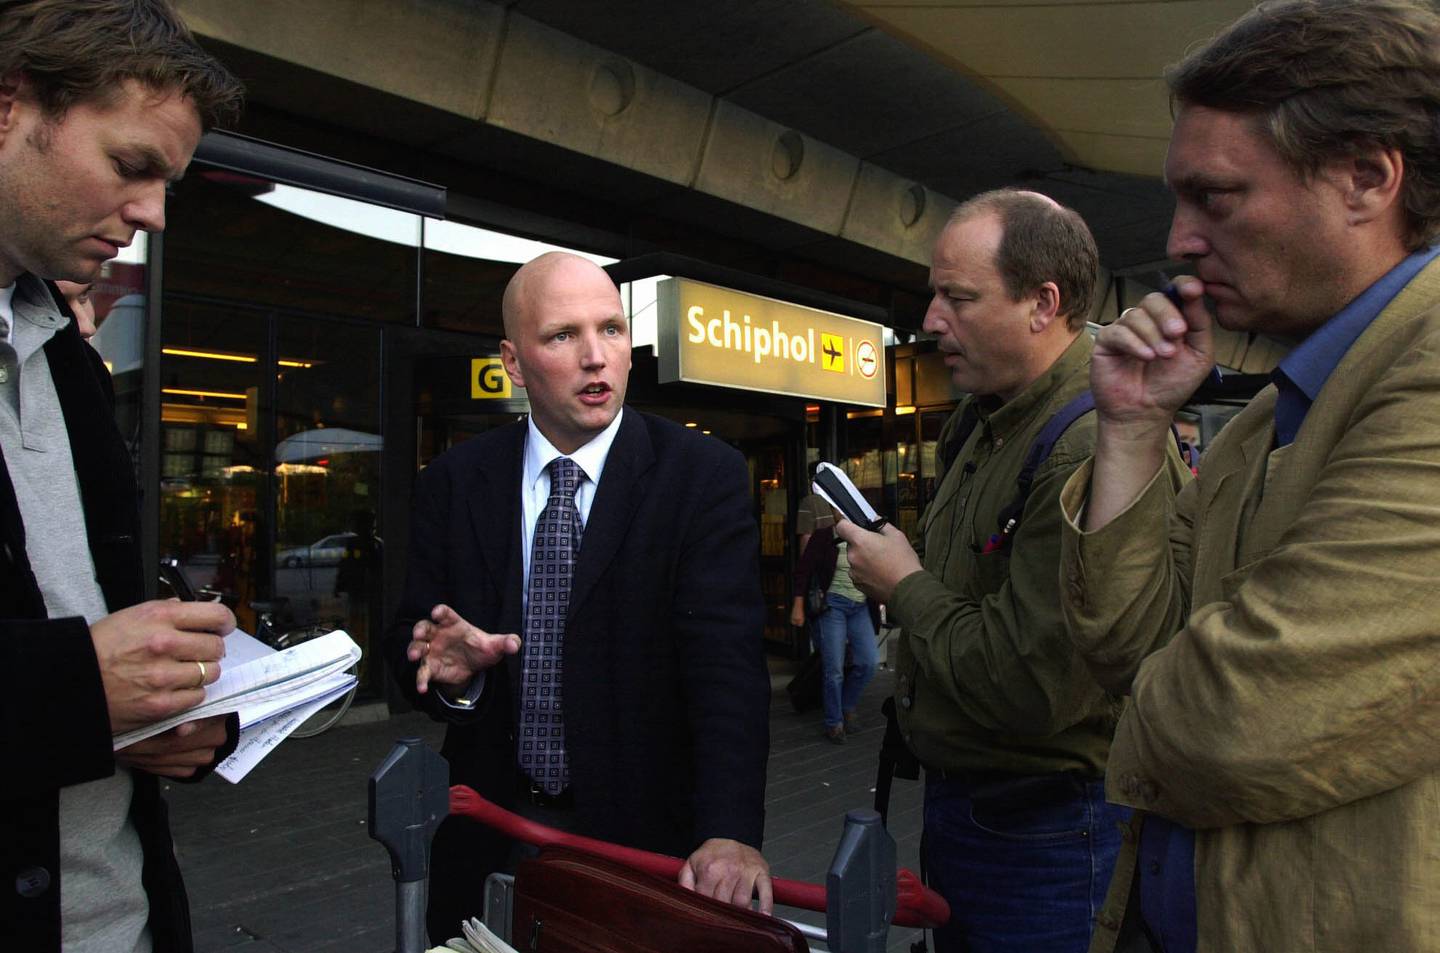 Schiphol internasjonale flyplass 2002. Brynjar Meling snakker med journalister kort tid etter at mulla Krekar er blitt arrestert i Nederland.